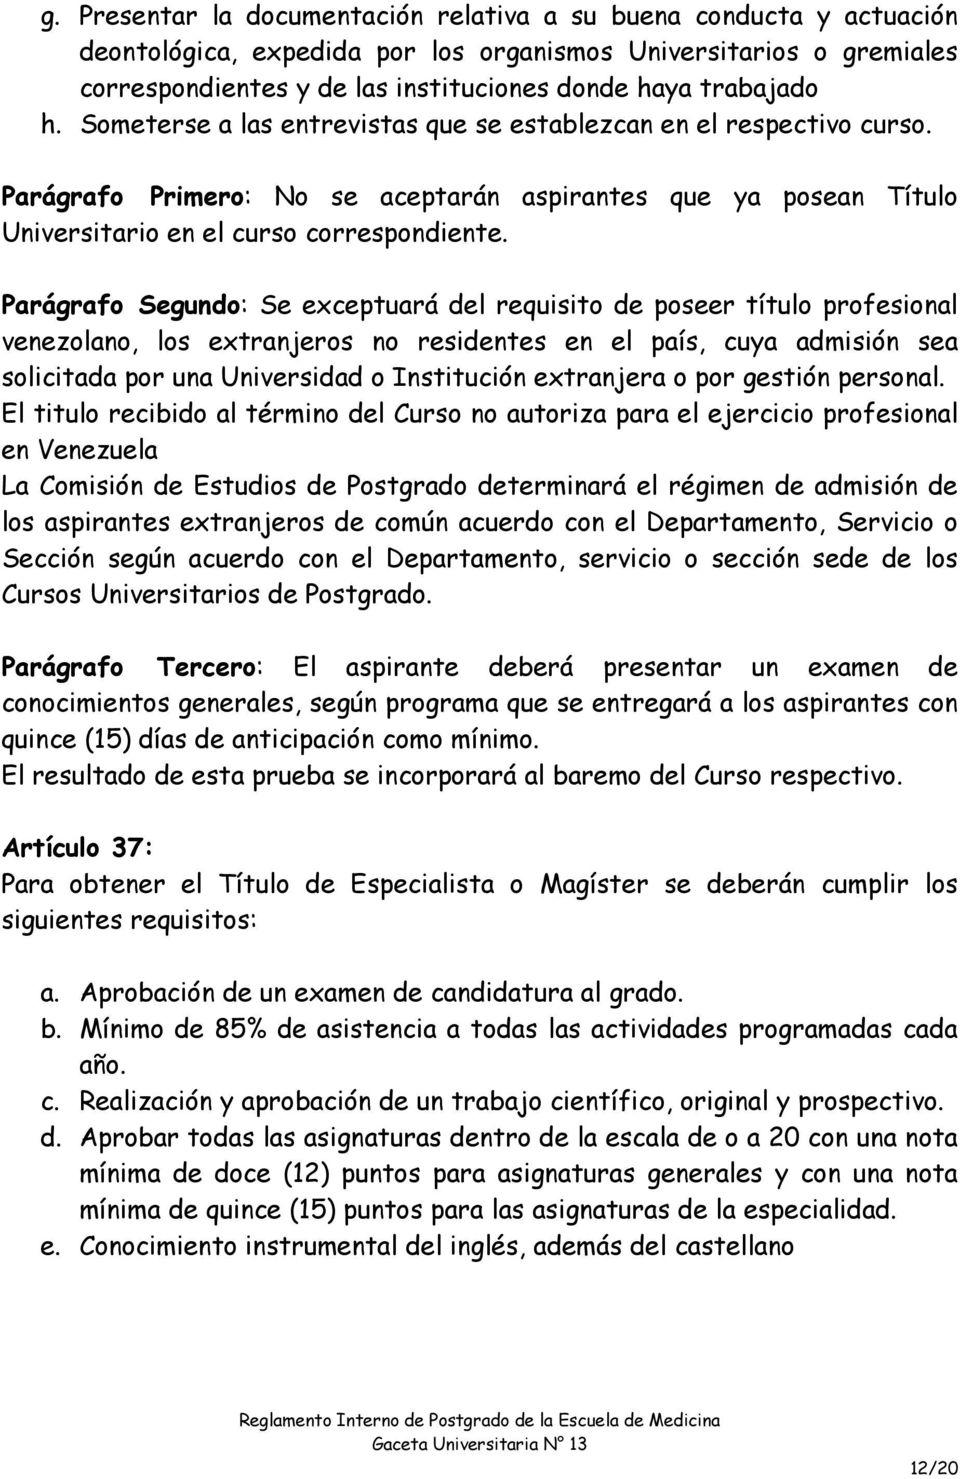 Parágrafo Segundo: Se exceptuará del requisito de poseer título profesional venezolano, los extranjeros no residentes en el país, cuya admisión sea solicitada por una Universidad o Institución